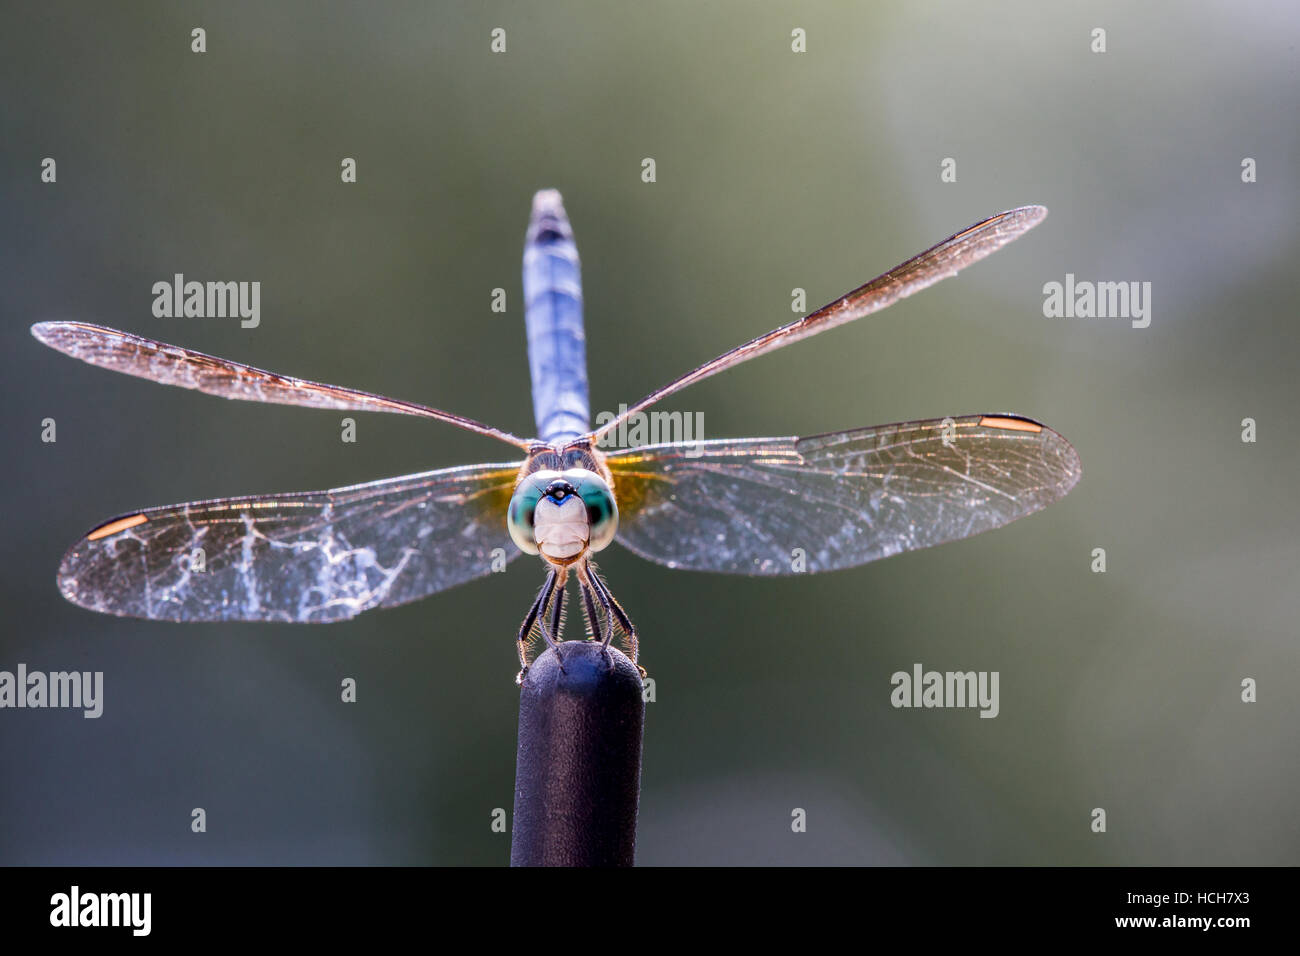 Dragonfly asoleándose En La punta de una antena de coche Foto de stock